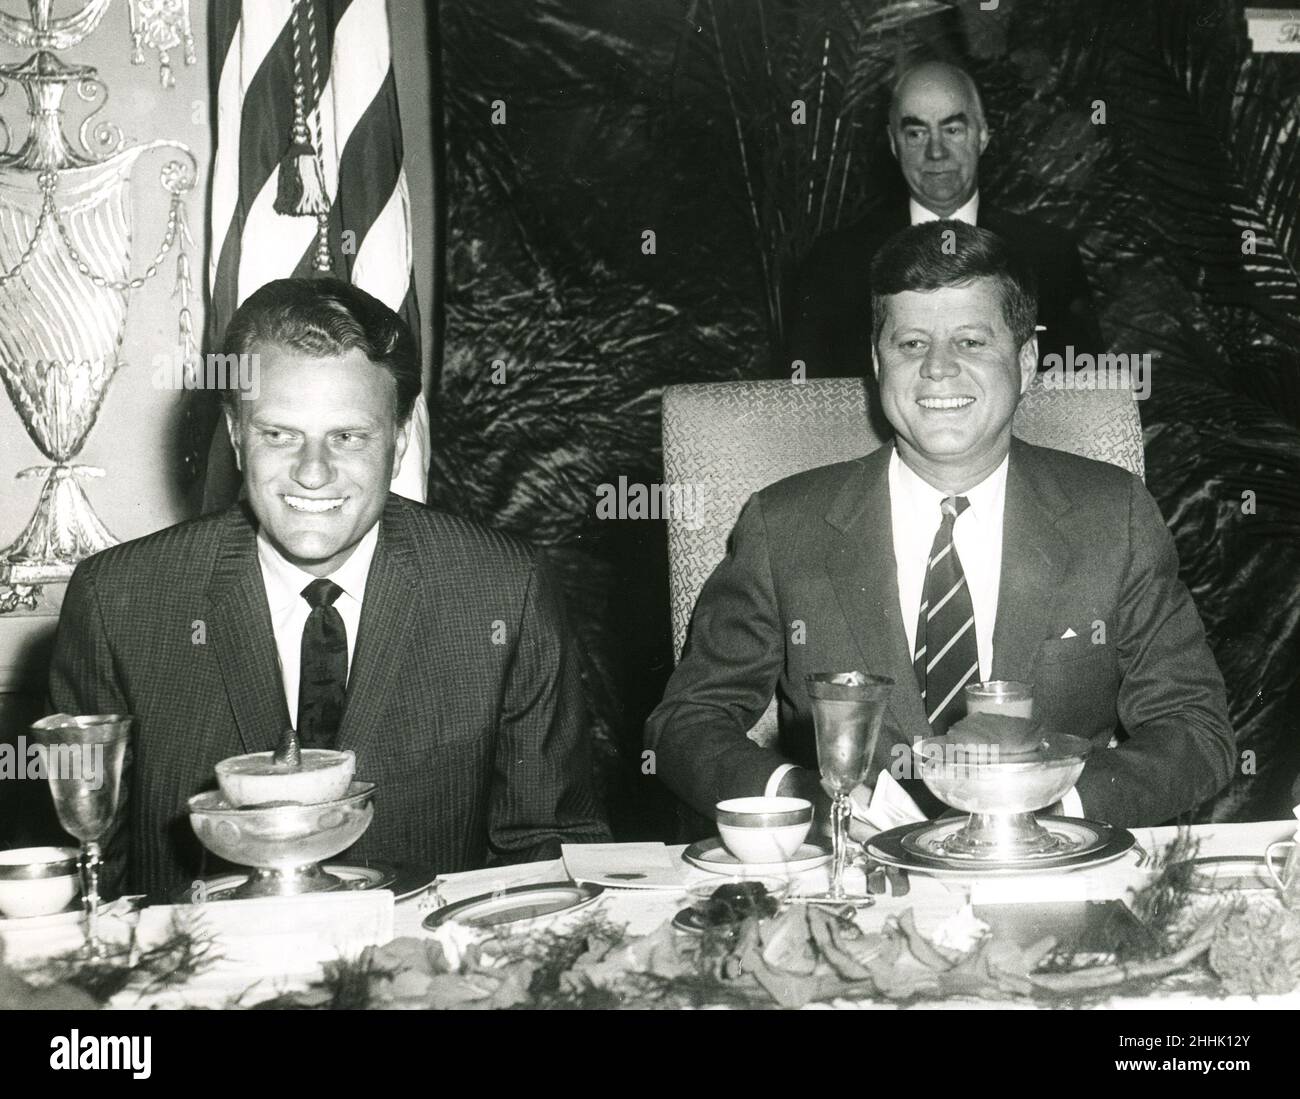 Le révérend Billy Graham et le président John F. Kennedy à la Conférence internationale sur le leadership chrétien 17th, aucun lieu.Abbie Rowe photographe.9 février 1961. Banque D'Images